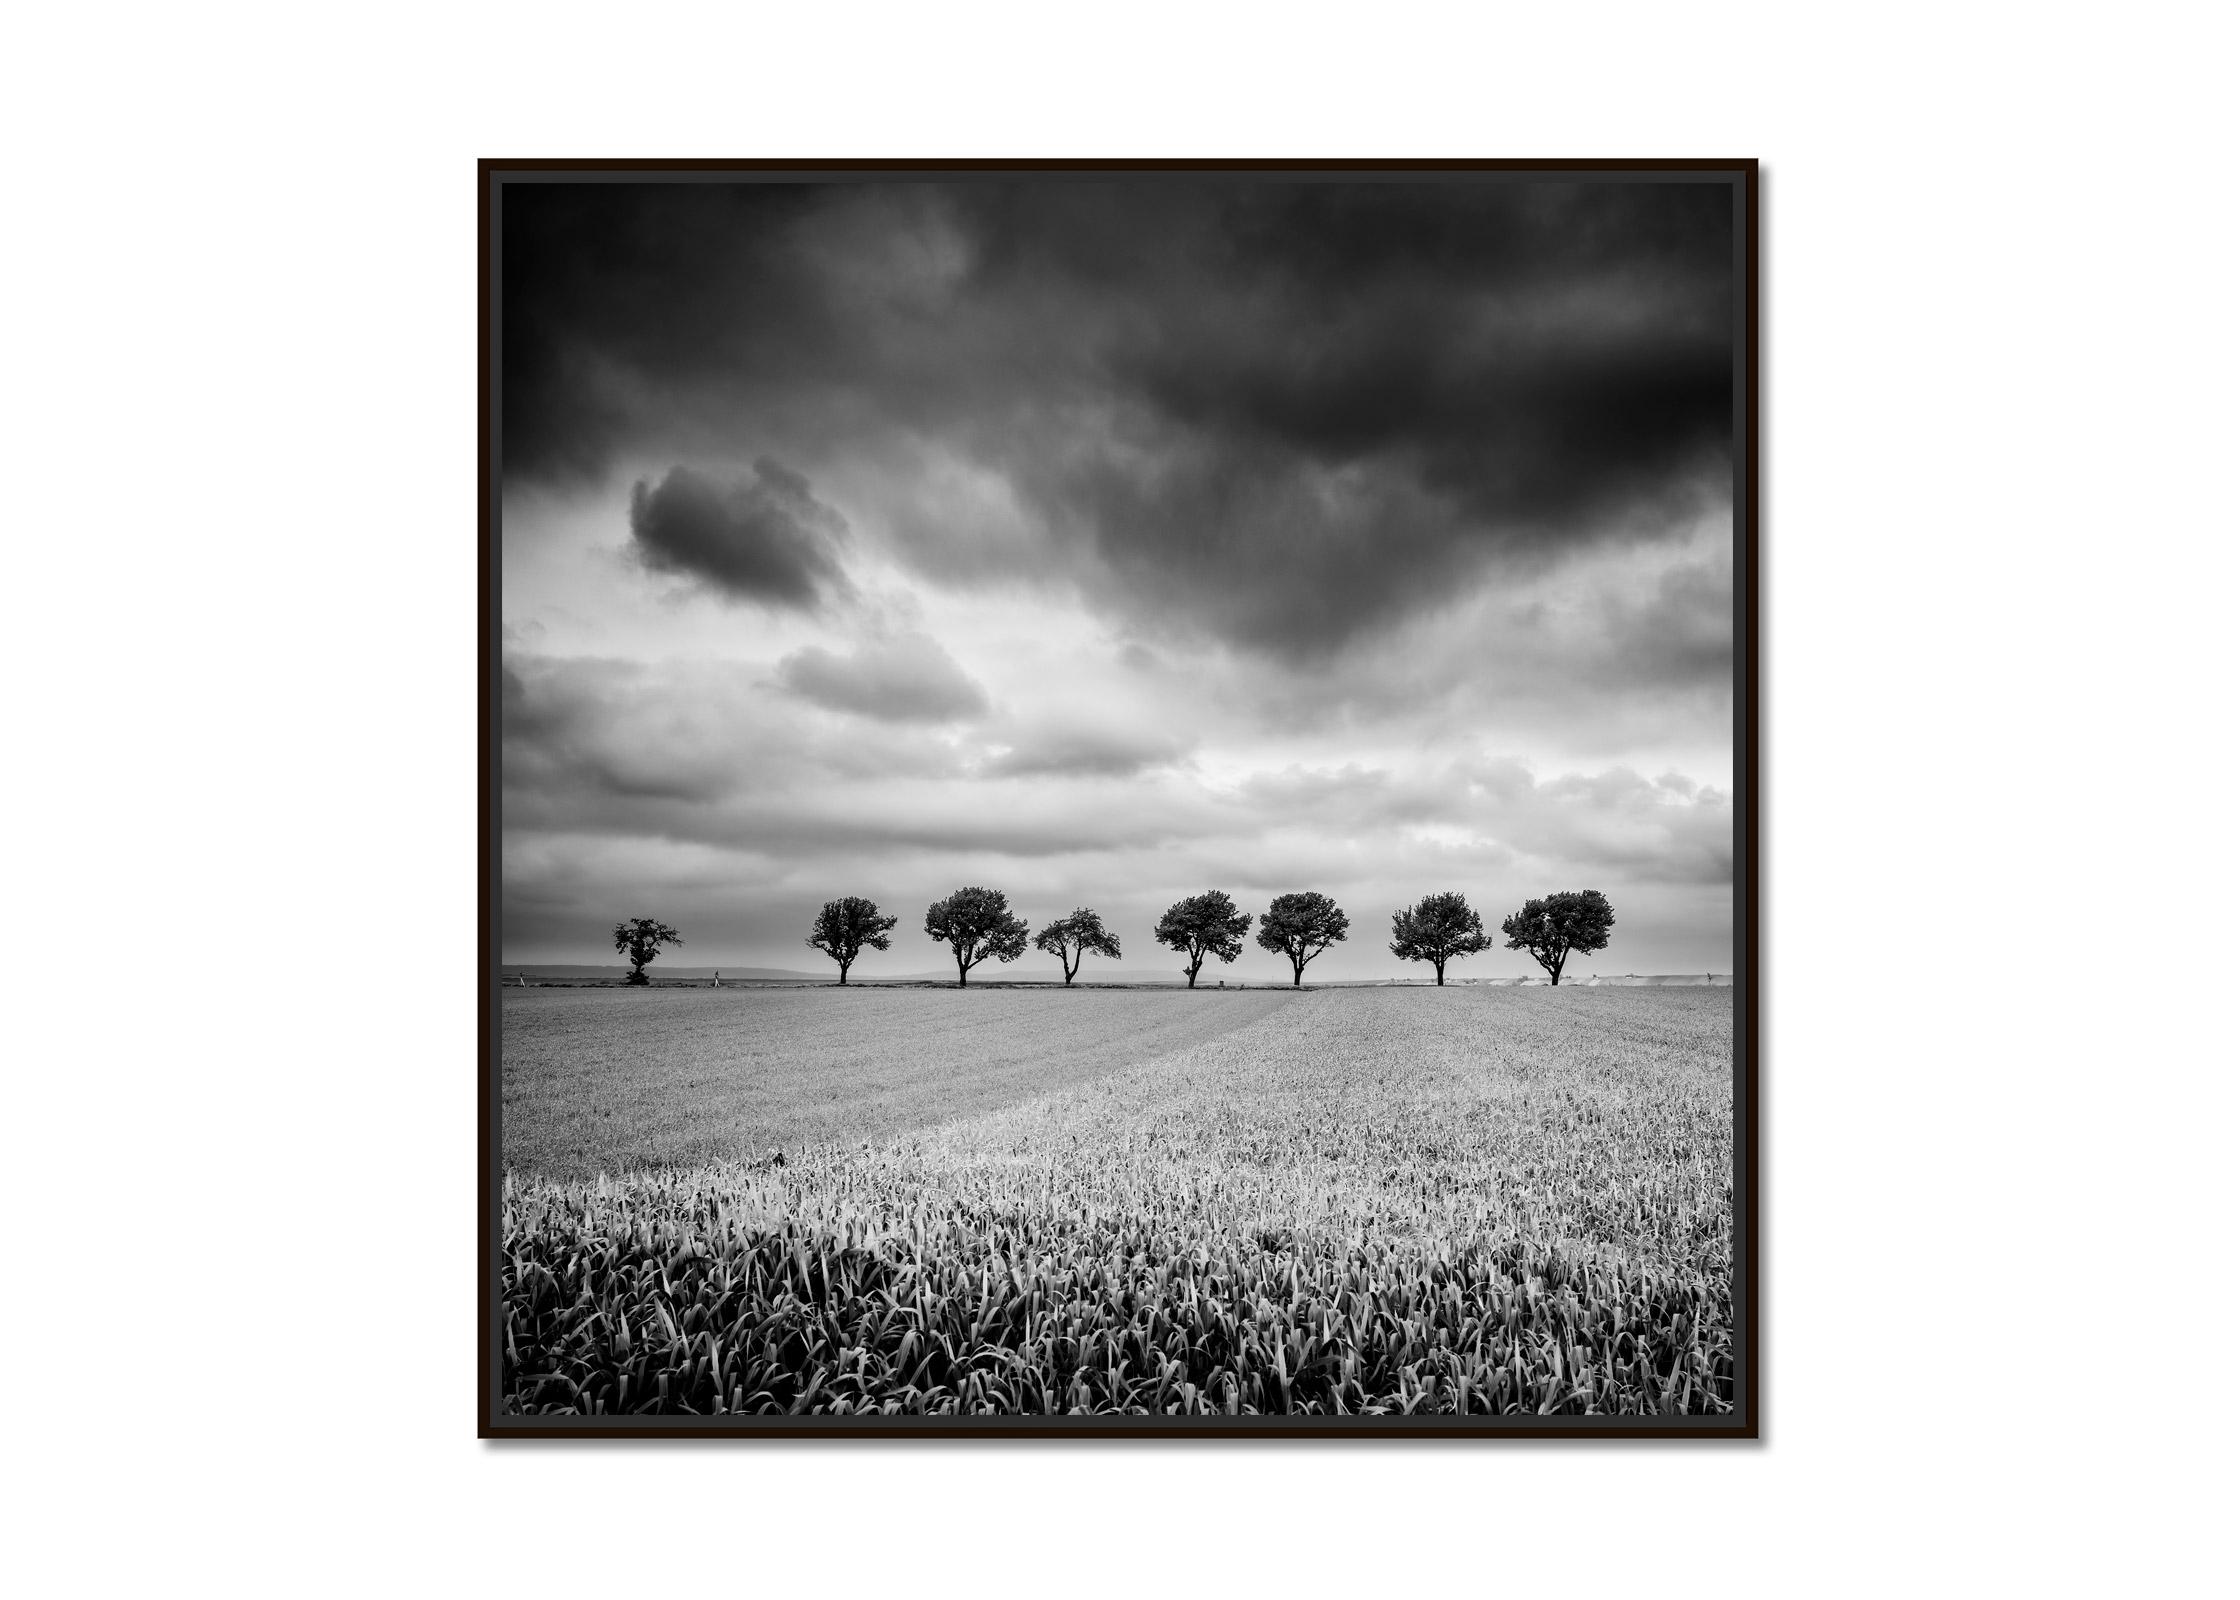 Zehn Kirschbaumbäume, stürmische Wolken, Schwarz-Weiß, Landschaft, Kunstfotografie – Print von Gerald Berghammer